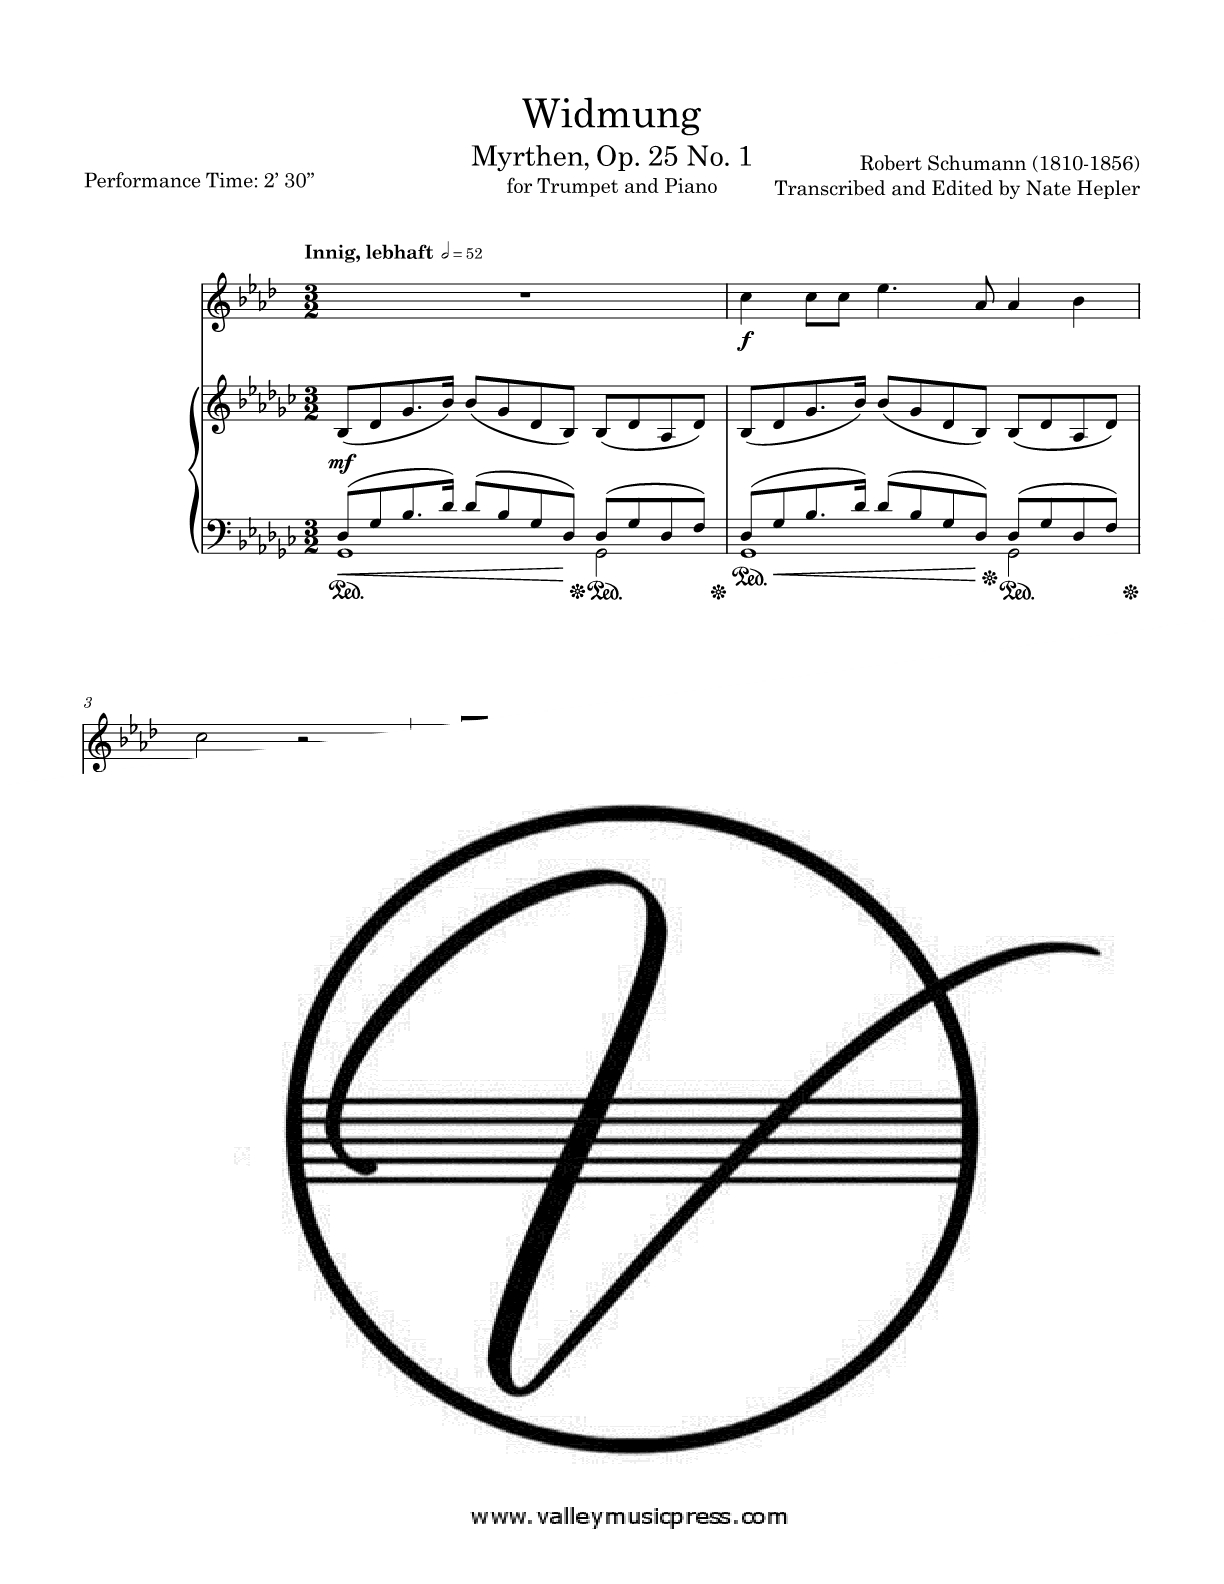 Schumann - Widmung Myrthen Op. 25 No. 1 (Trumpet & Piano)